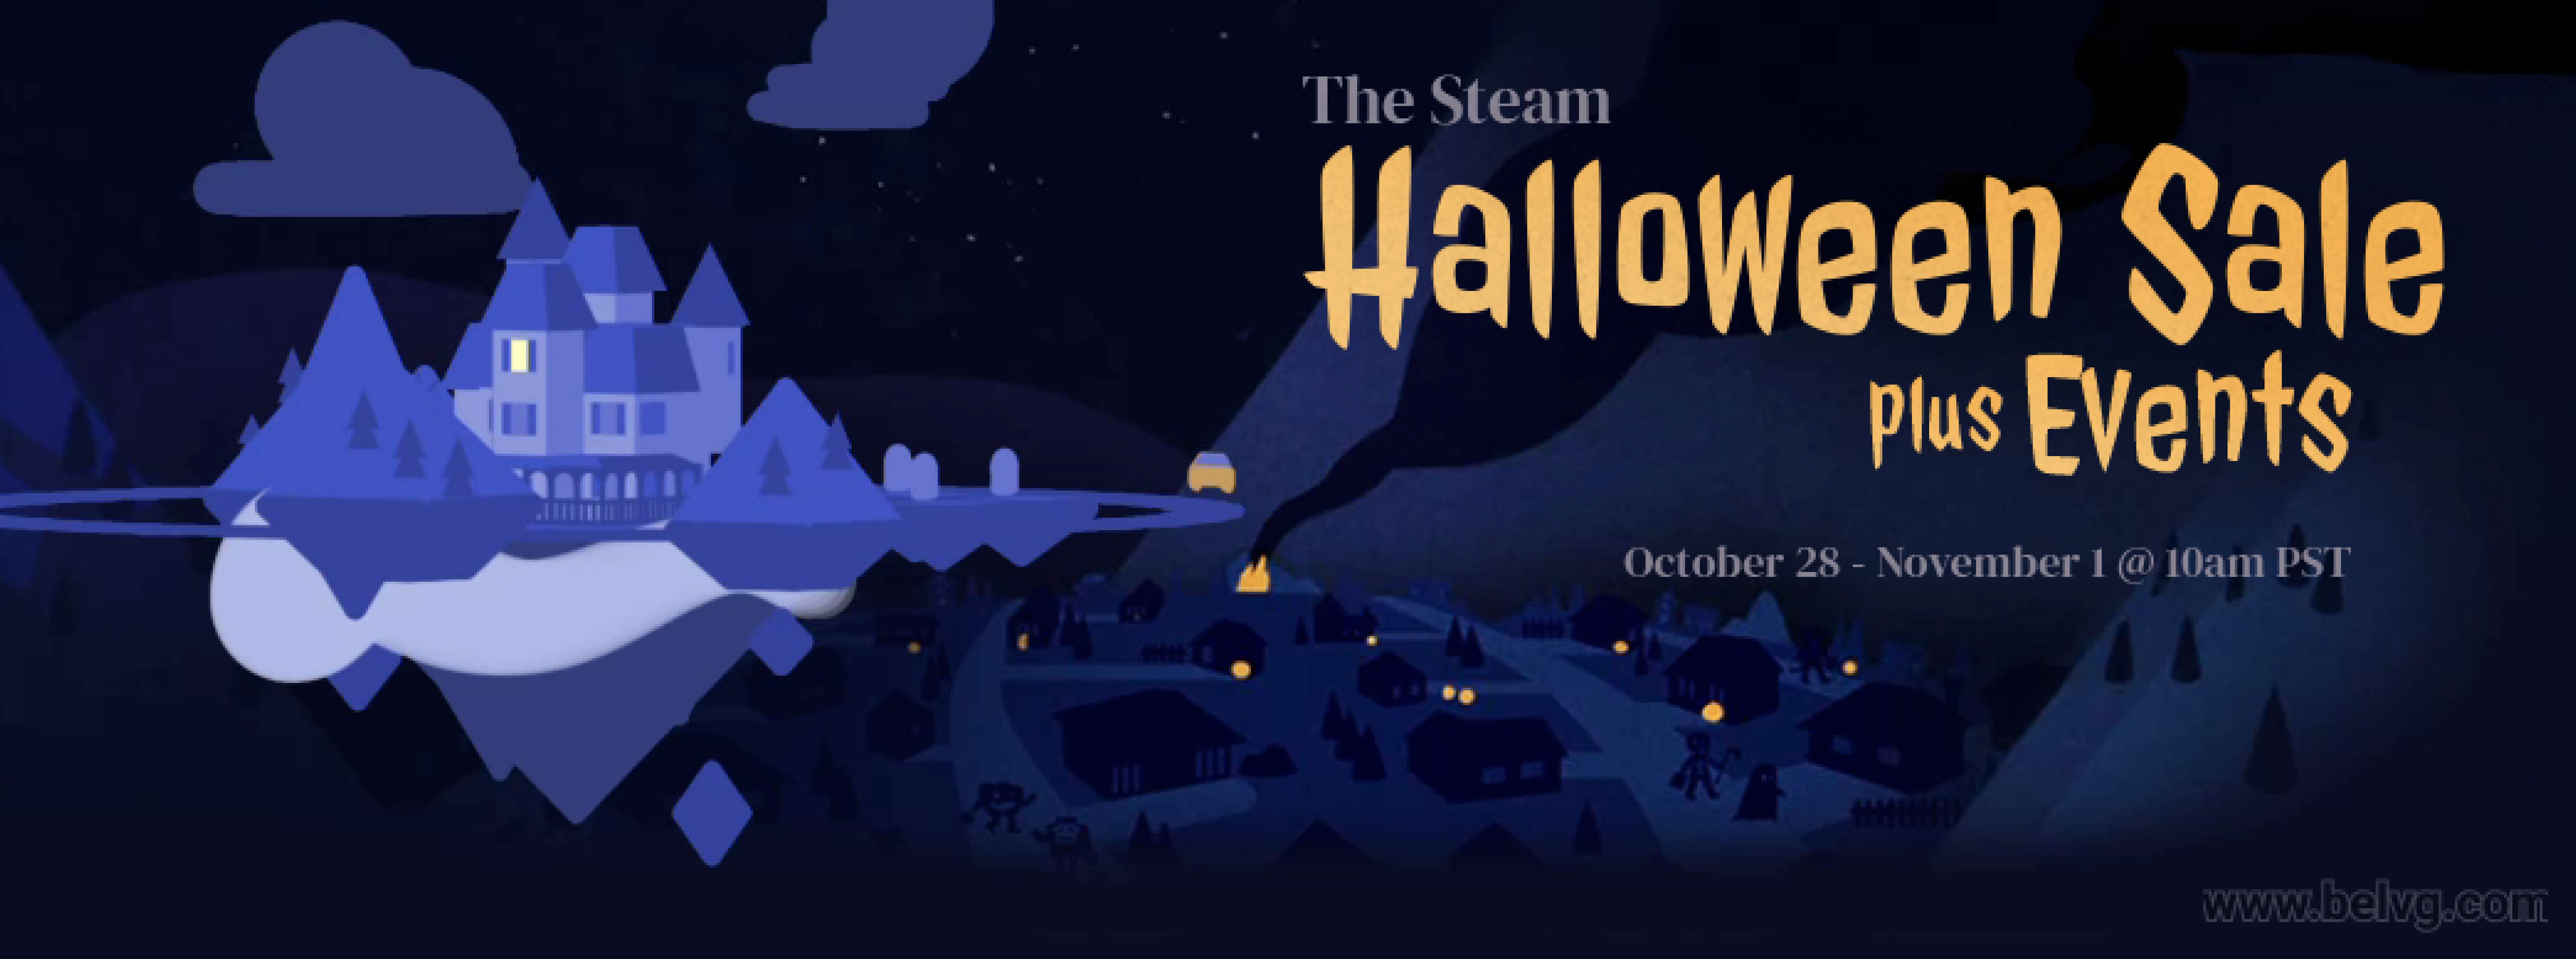 steam halloween marketing